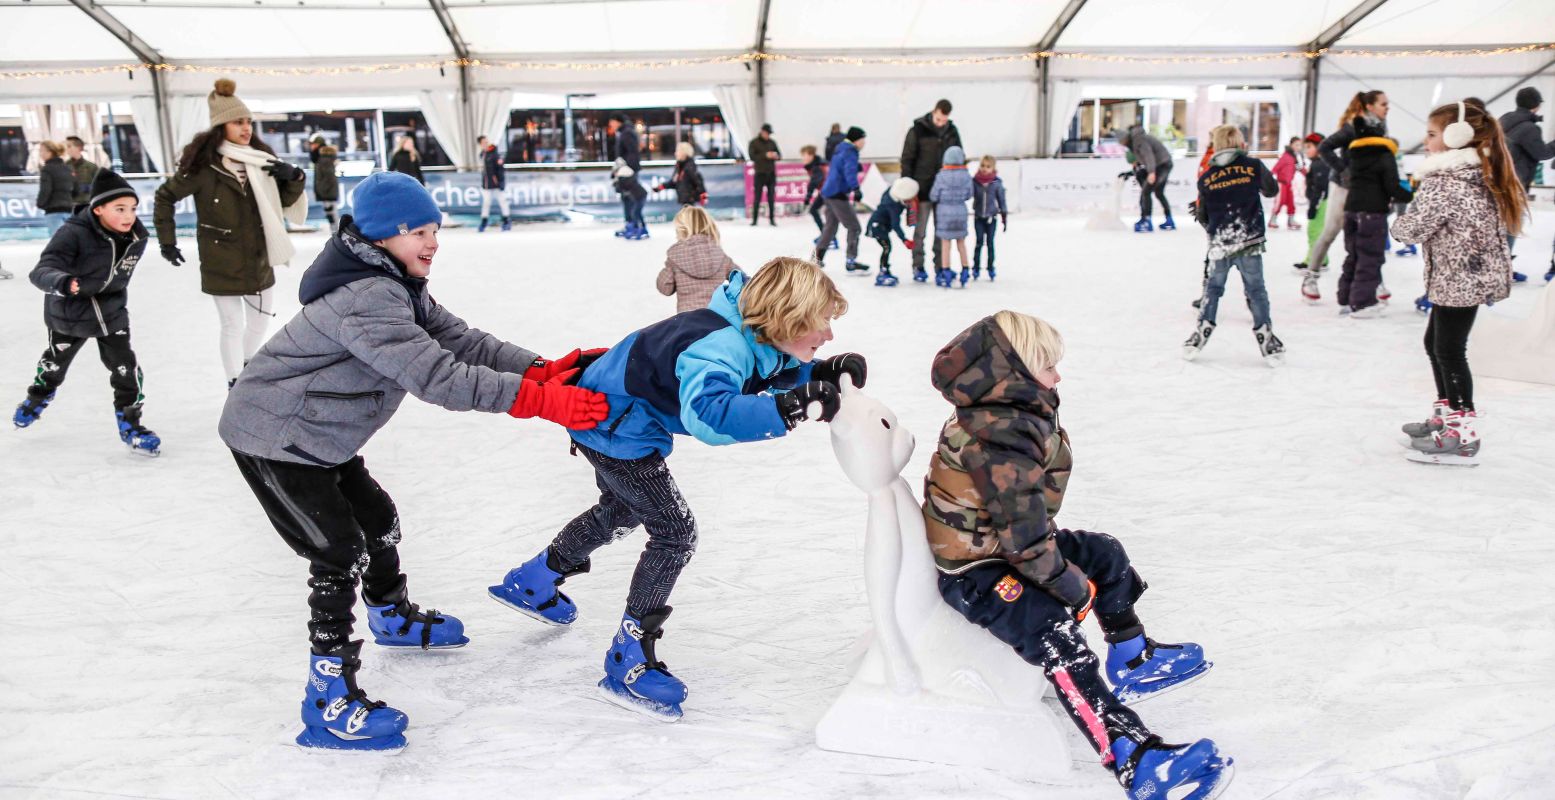 Schaats een rondje over de schaatsbaan voor het Kurhaus in Scheveningen. Foto: The Hague & Partners